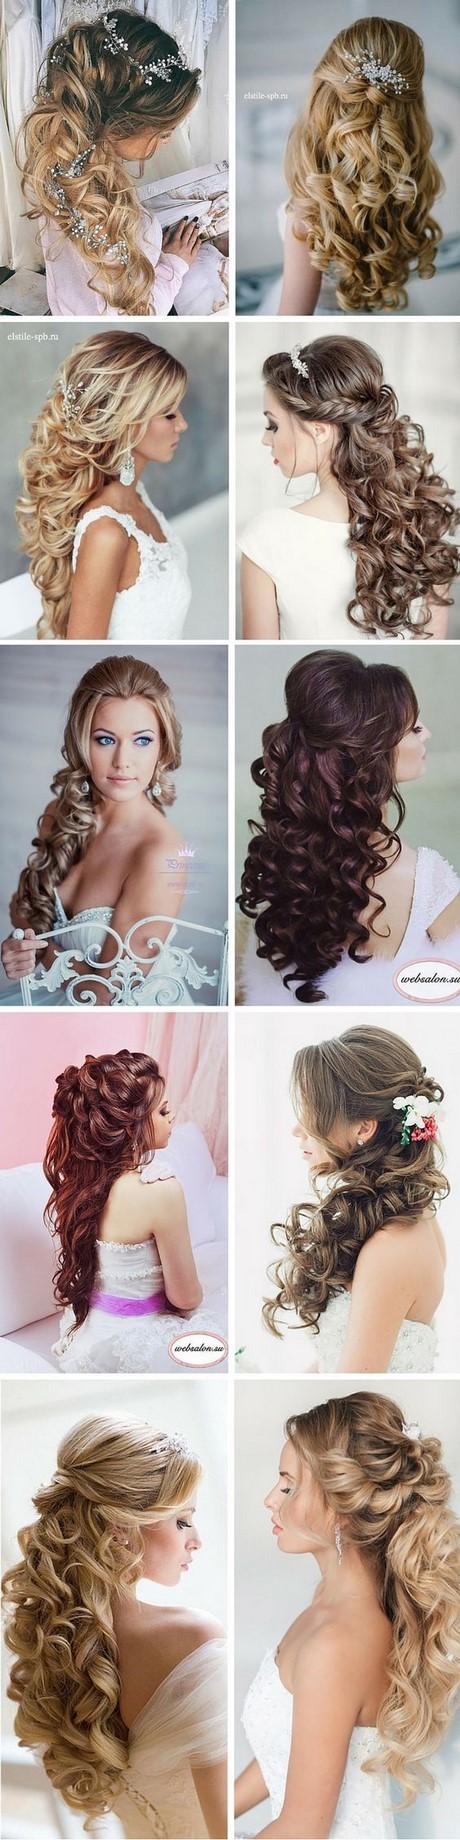 Weddings hairstyles for long hair weddings-hairstyles-for-long-hair-34_15